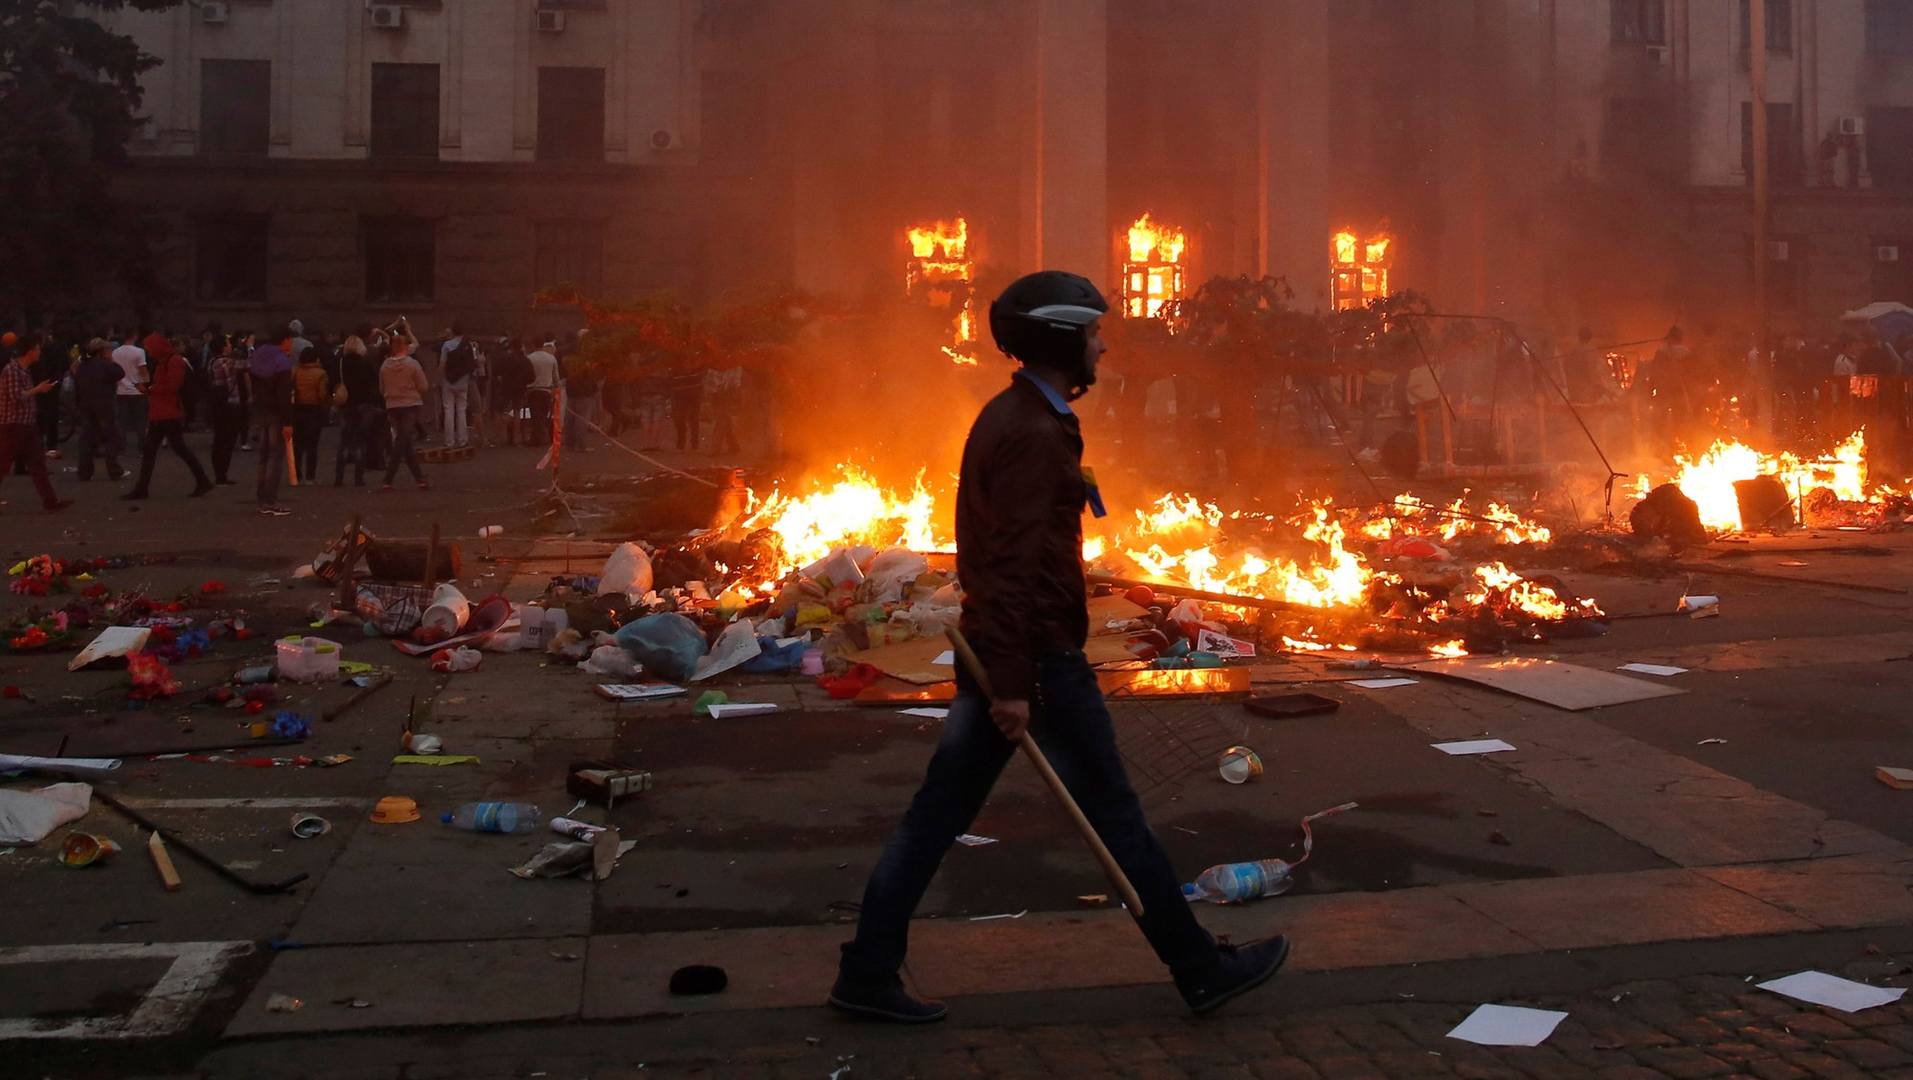 трагедия в Одессе 2 мая 2014 года, горящий Дом профсоюзов в Одессе